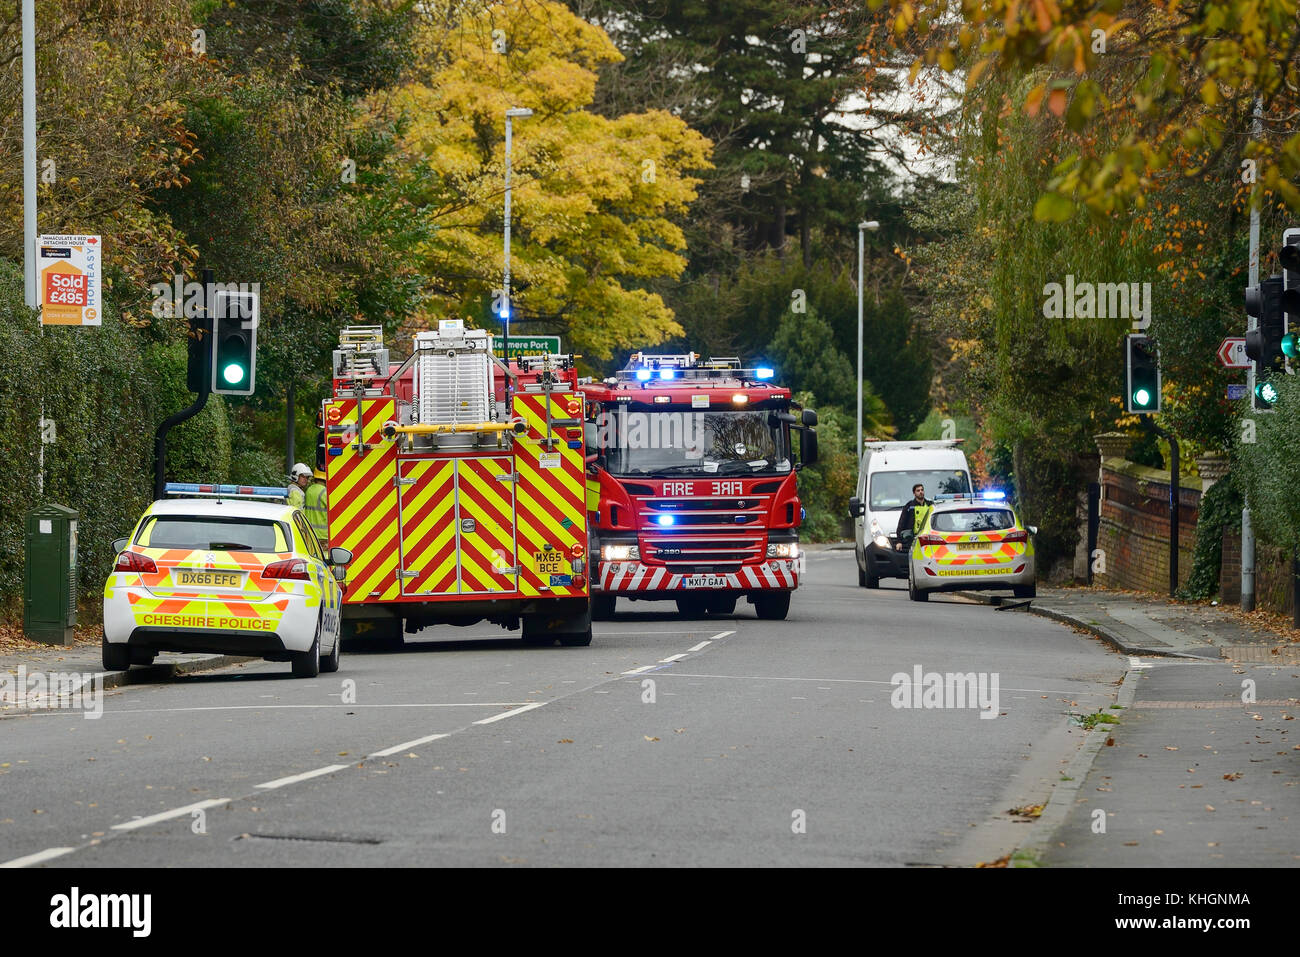 Chester, Royaume-Uni 17 novembre 2017. La police et d'incendie en présence d'un incident gaz sur Liverpool Road. Certaines maisons sont à proximité sans pouvoir après une petite explosion à environ 10h. La route est fermée à toute circulation et aucun accidents sont signalés. Crédit : Andrew Paterson / Alamy Live News Banque D'Images